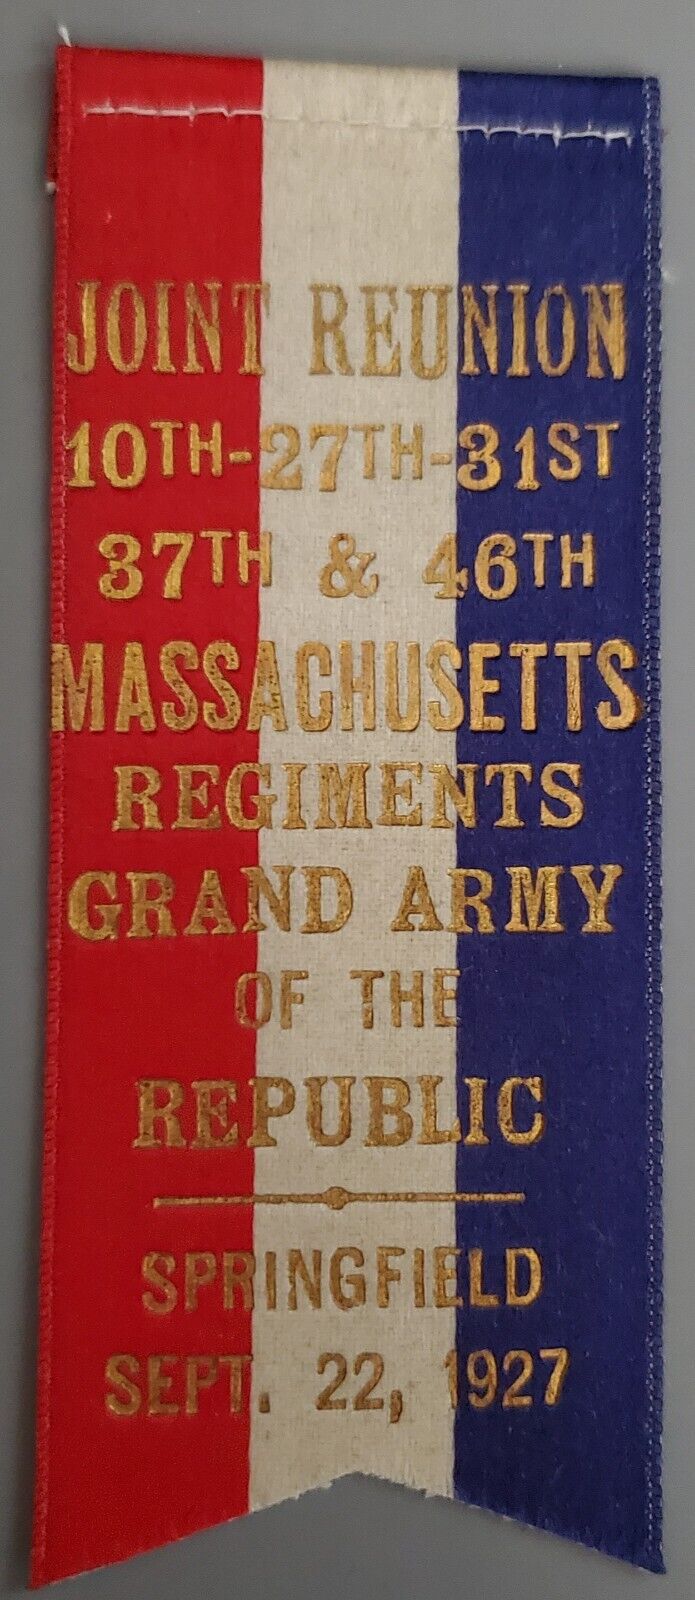 1927 Springfield/10th-27th-31st-37th & 46th Massachusetts Regiments